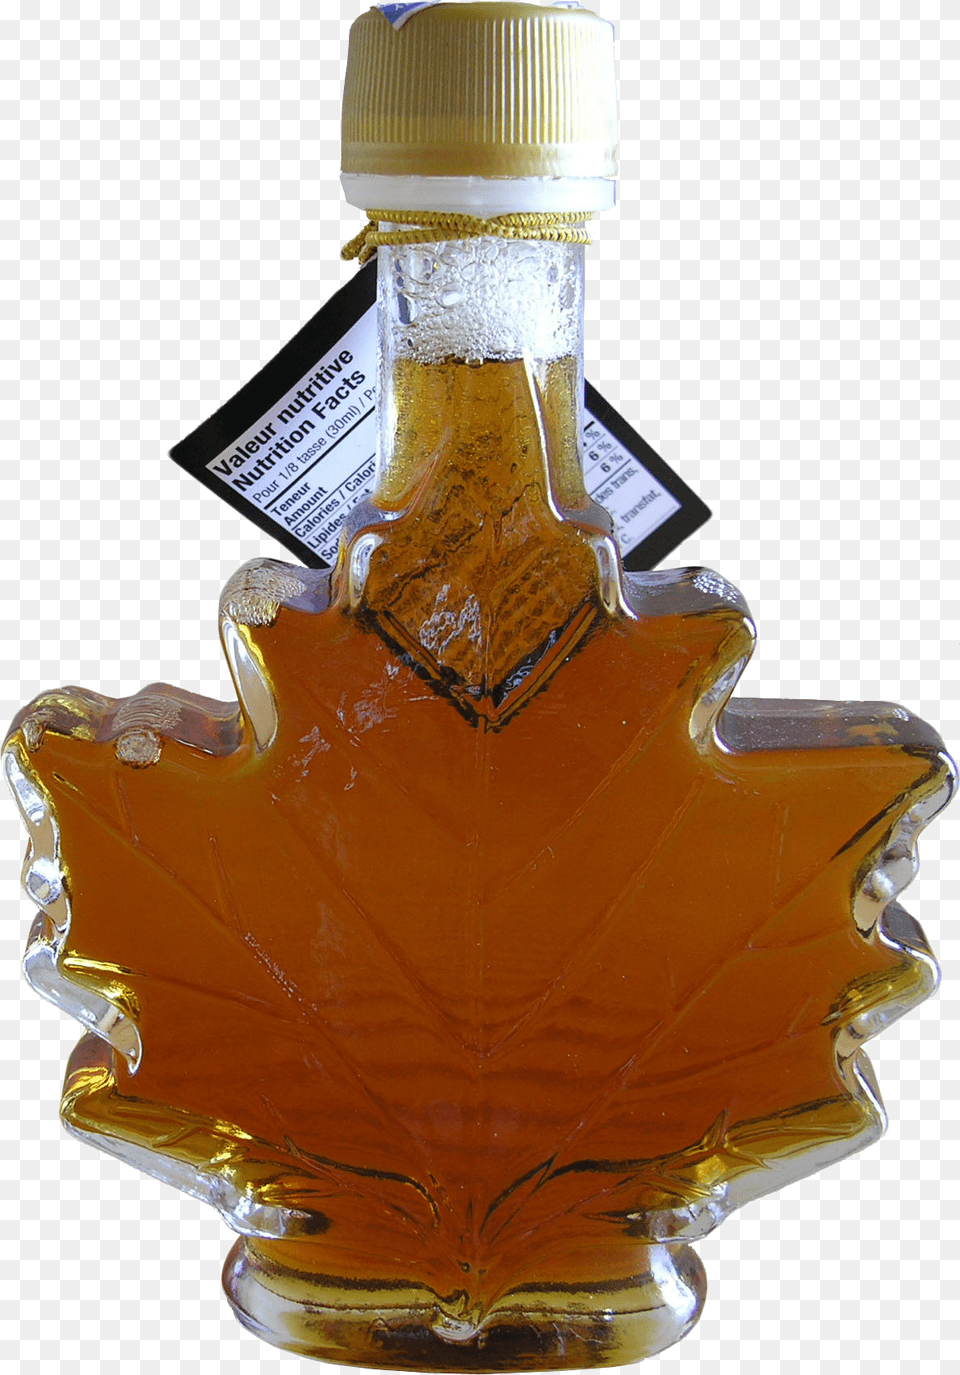 Maple Syrup Bottle Transparent Glass Bottle, Food, Leaf, Plant, Seasoning Free Png Download